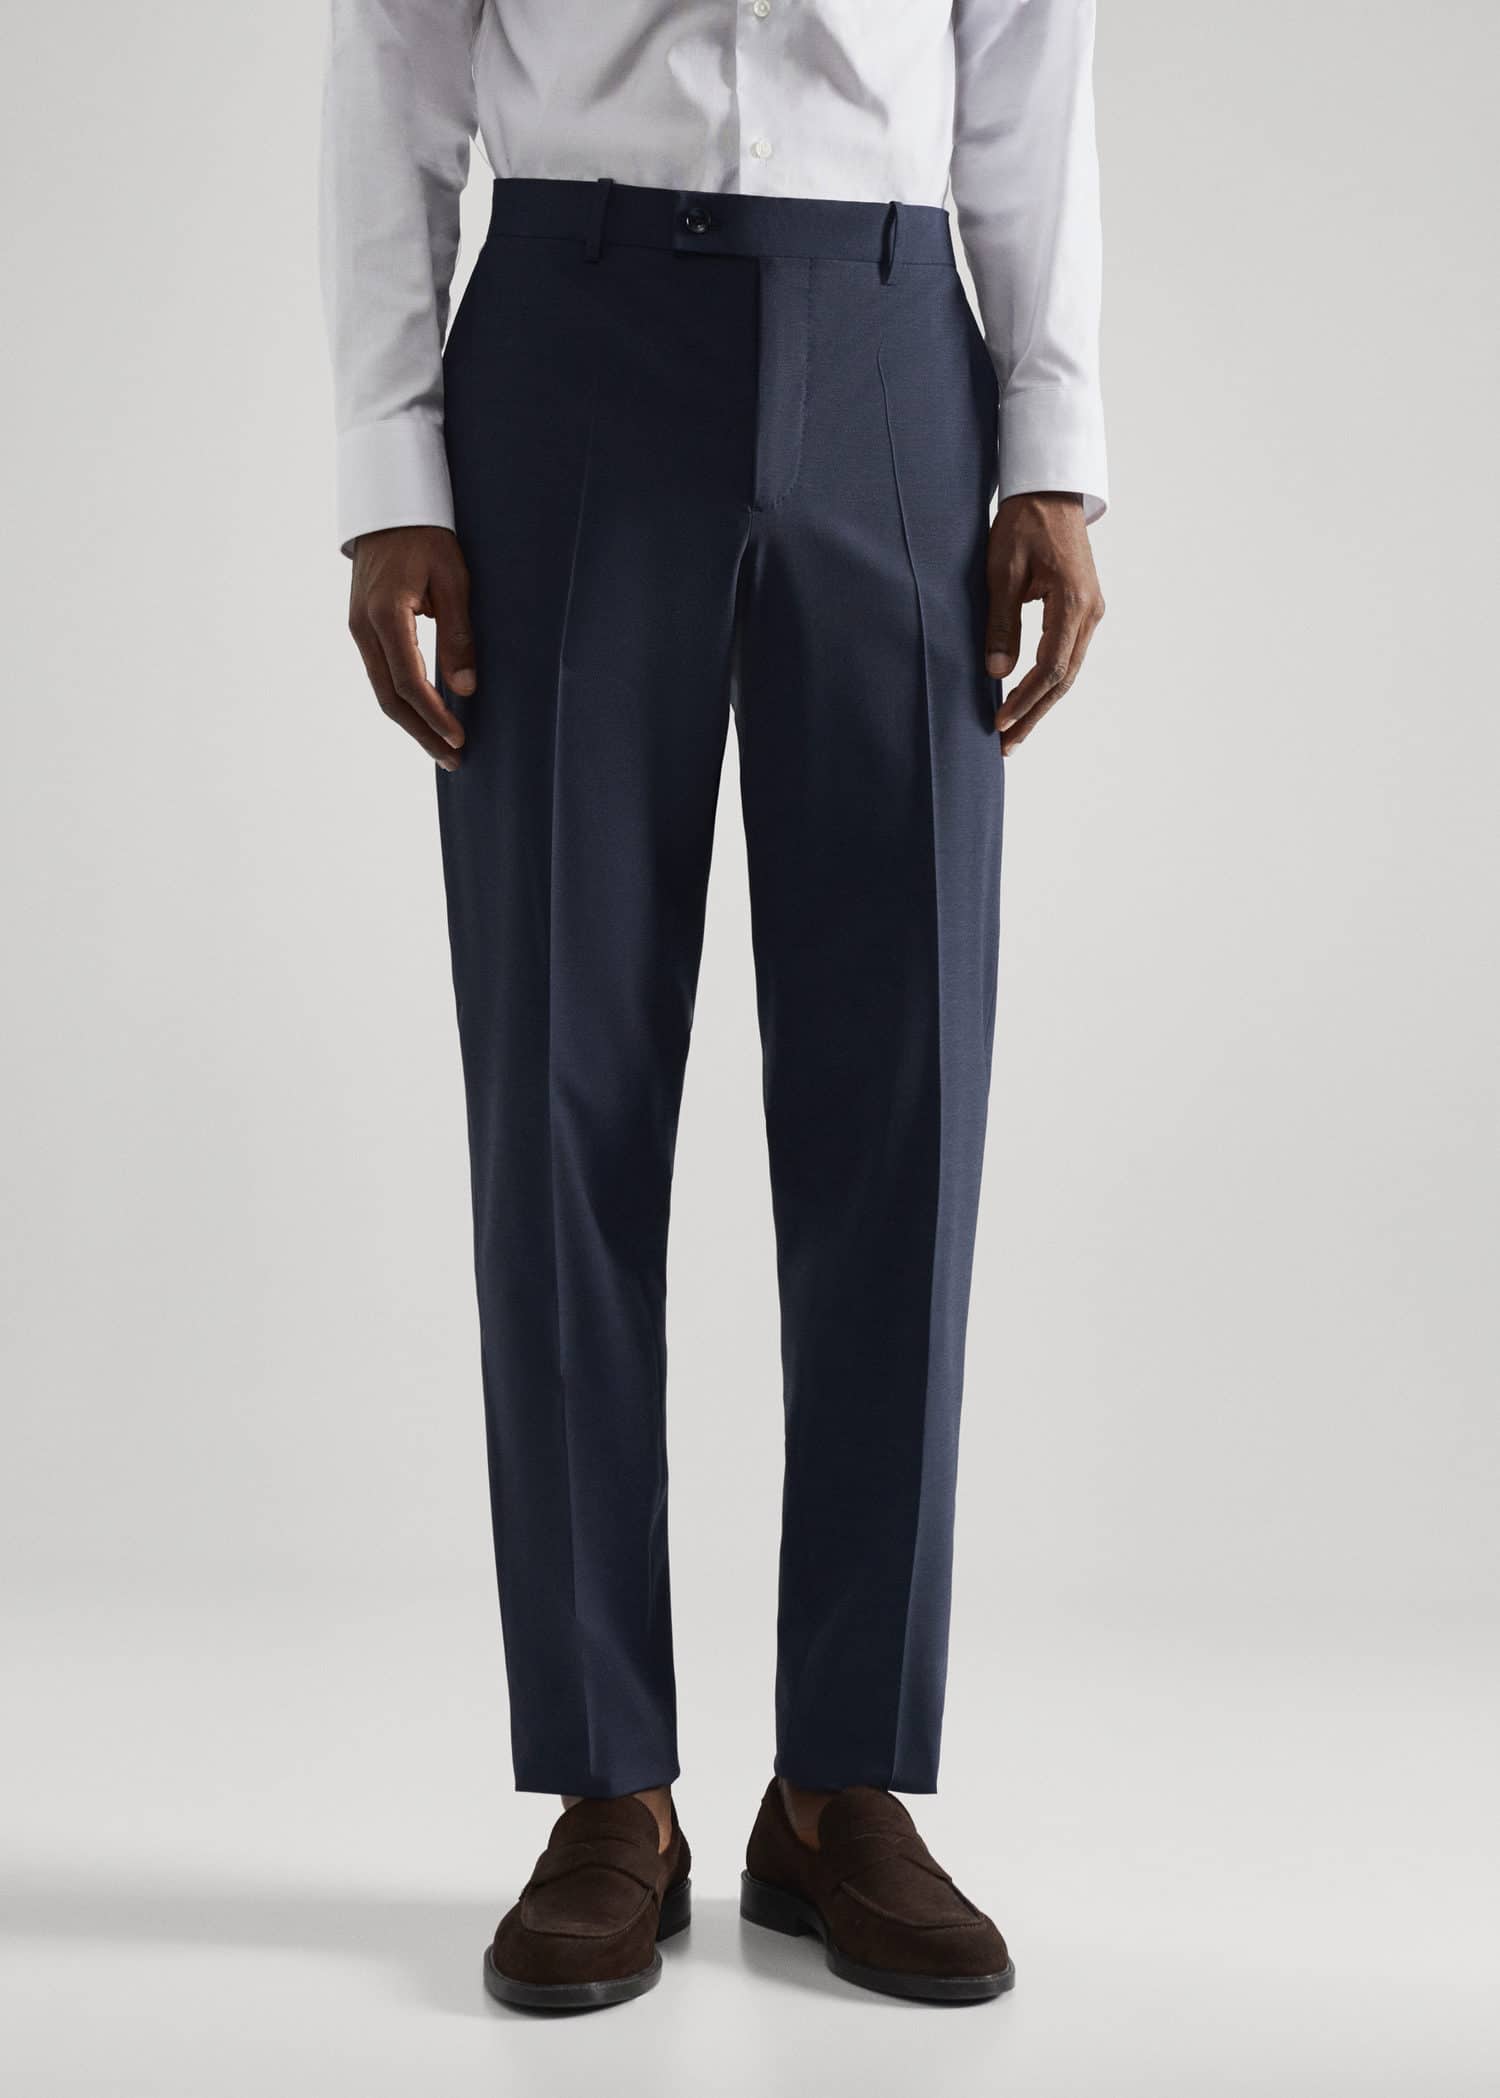 Pantalón traje slim fit lana - Plano medio